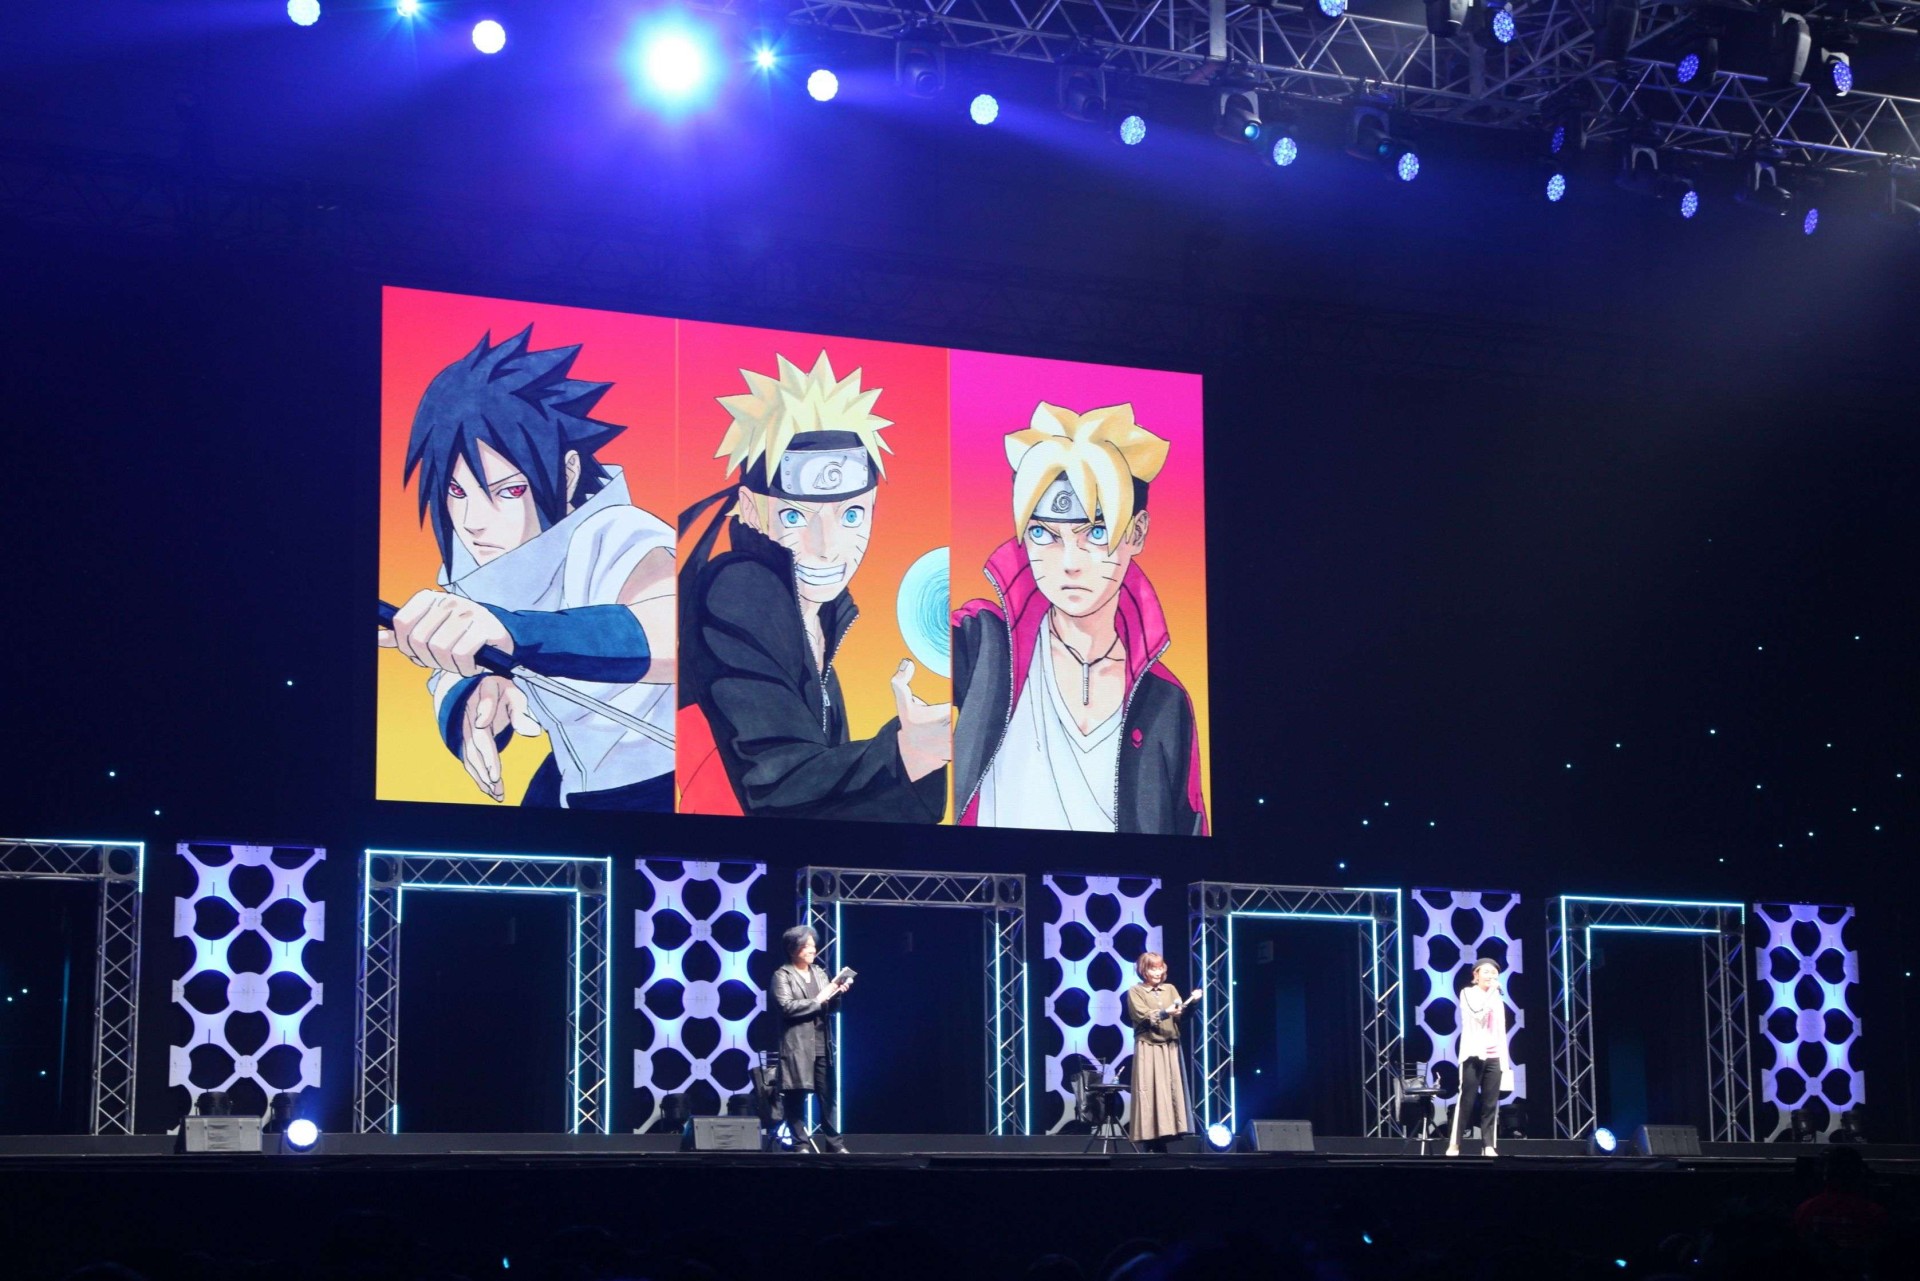 OFICIAL o Anime de boruto vai voltar em Agosto #boruto #oficial